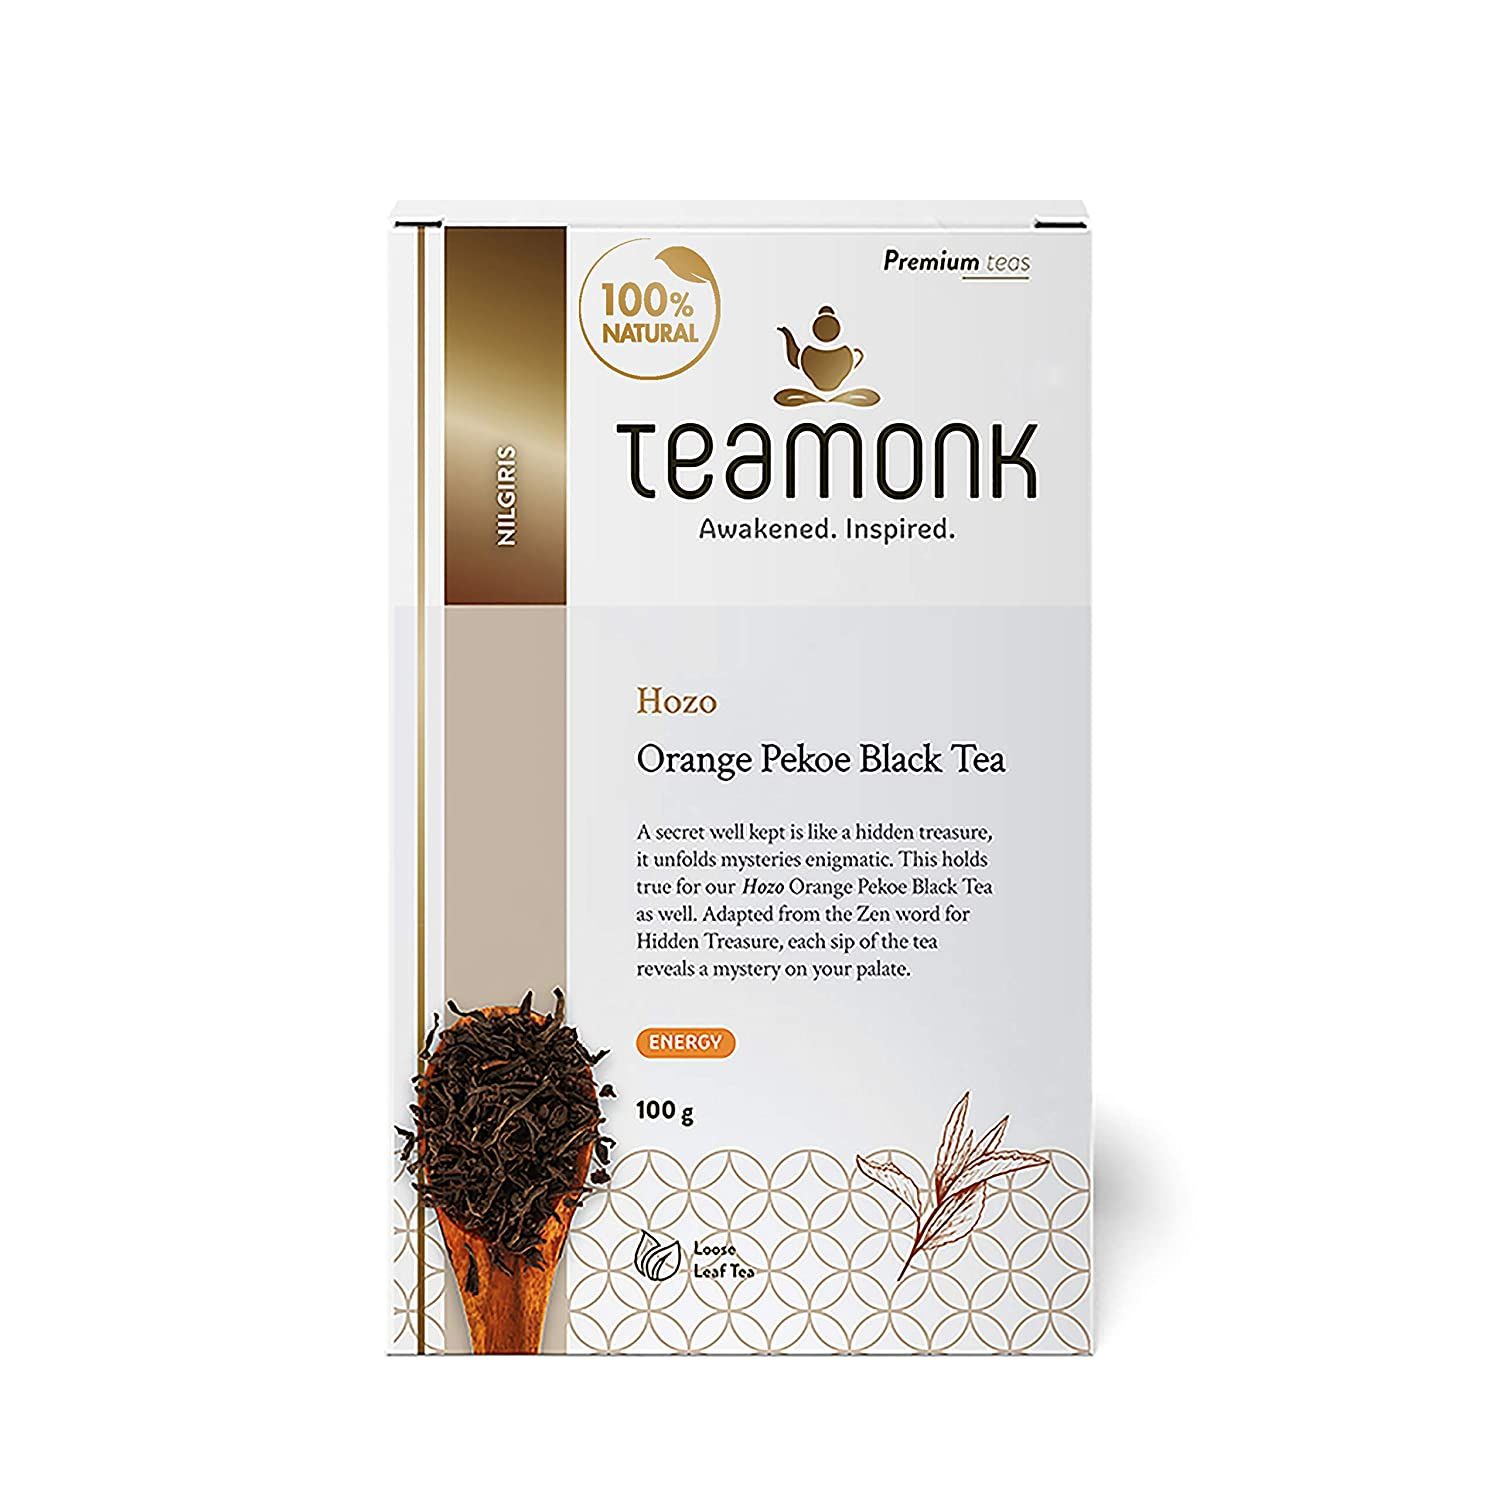 Teamonk Orange Peoke Black Tea Image